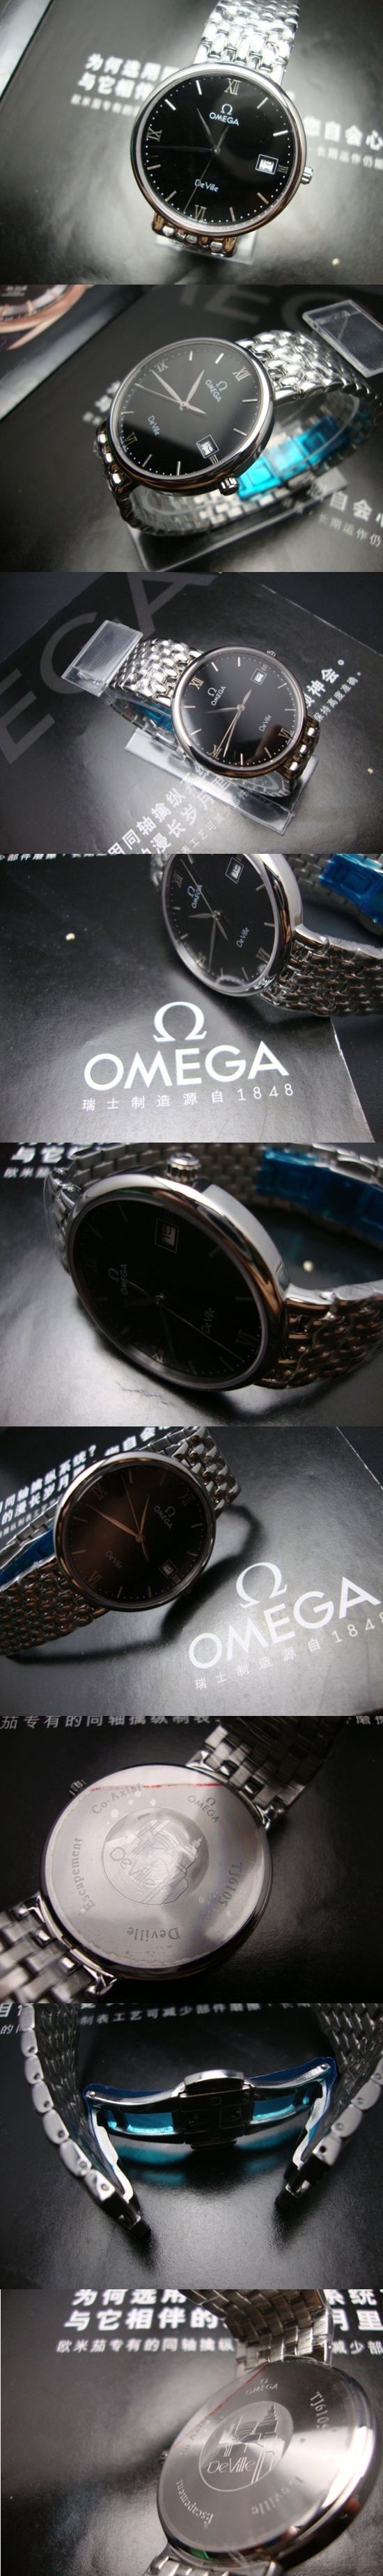 おしゃれなブランド時計がOMEGA-オメガ-腕時計 オメガ 男/女性用腕時計 OMEGA-N-005Aを提供します.